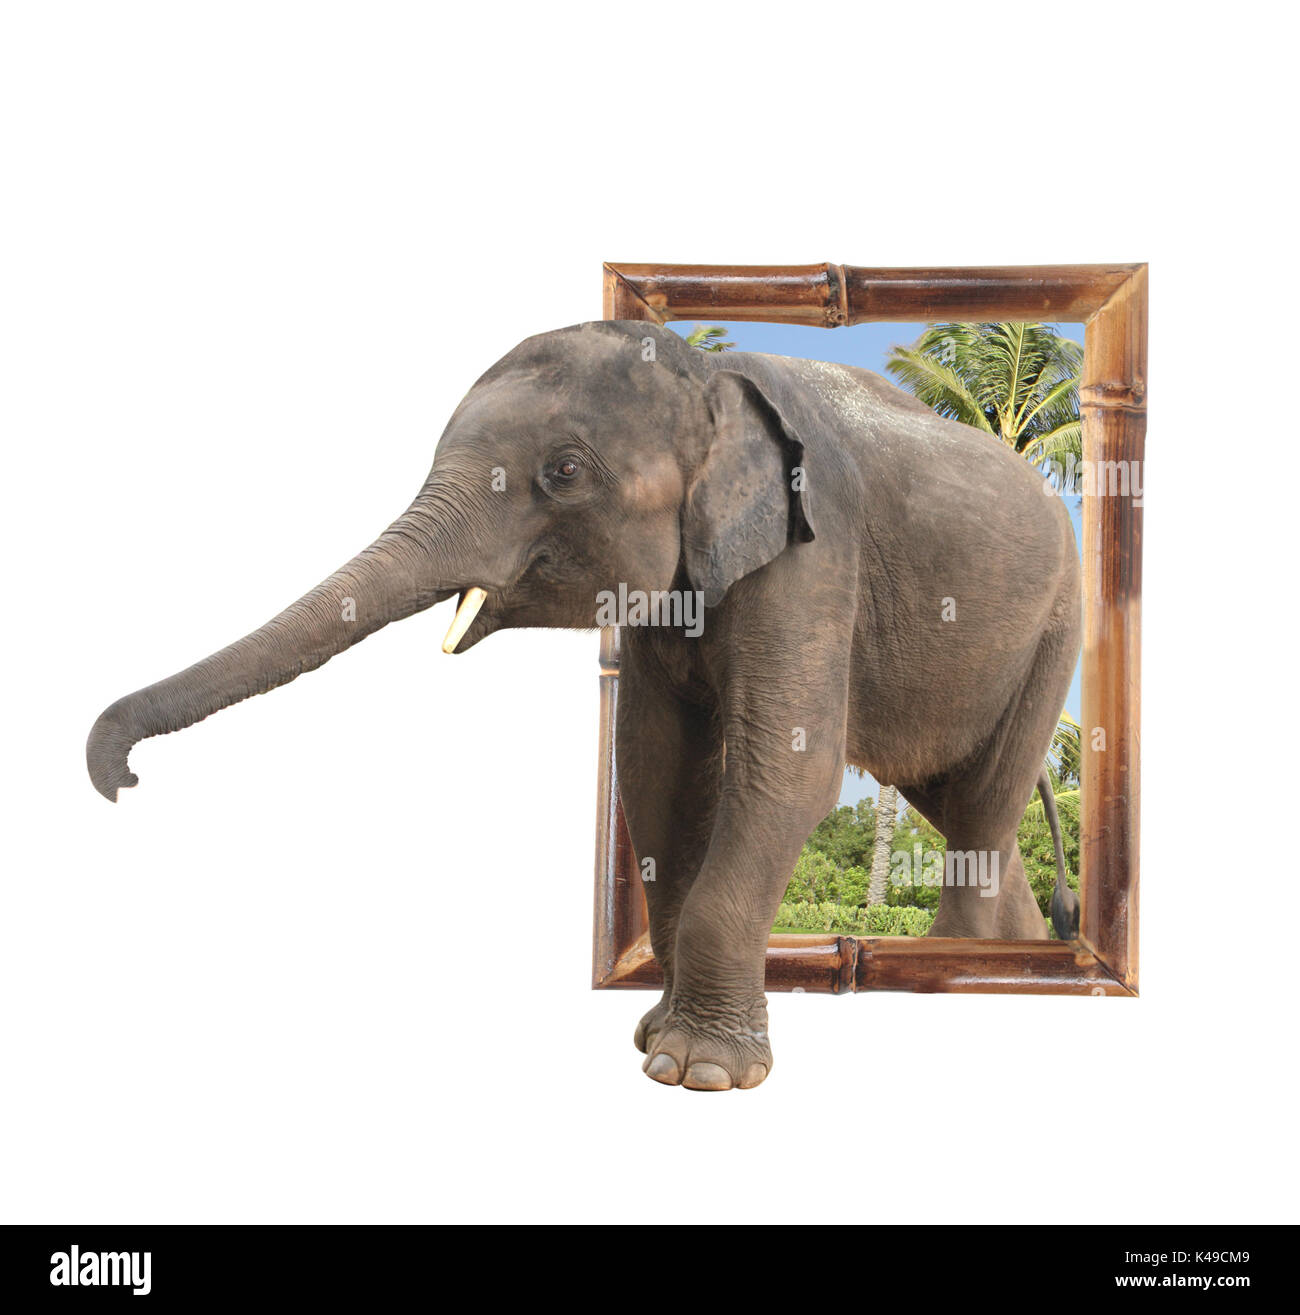 Bébé éléphant (Elephas maximus) dans cadre en bambou avec effet 3D. Isolé sur fond blanc Banque D'Images